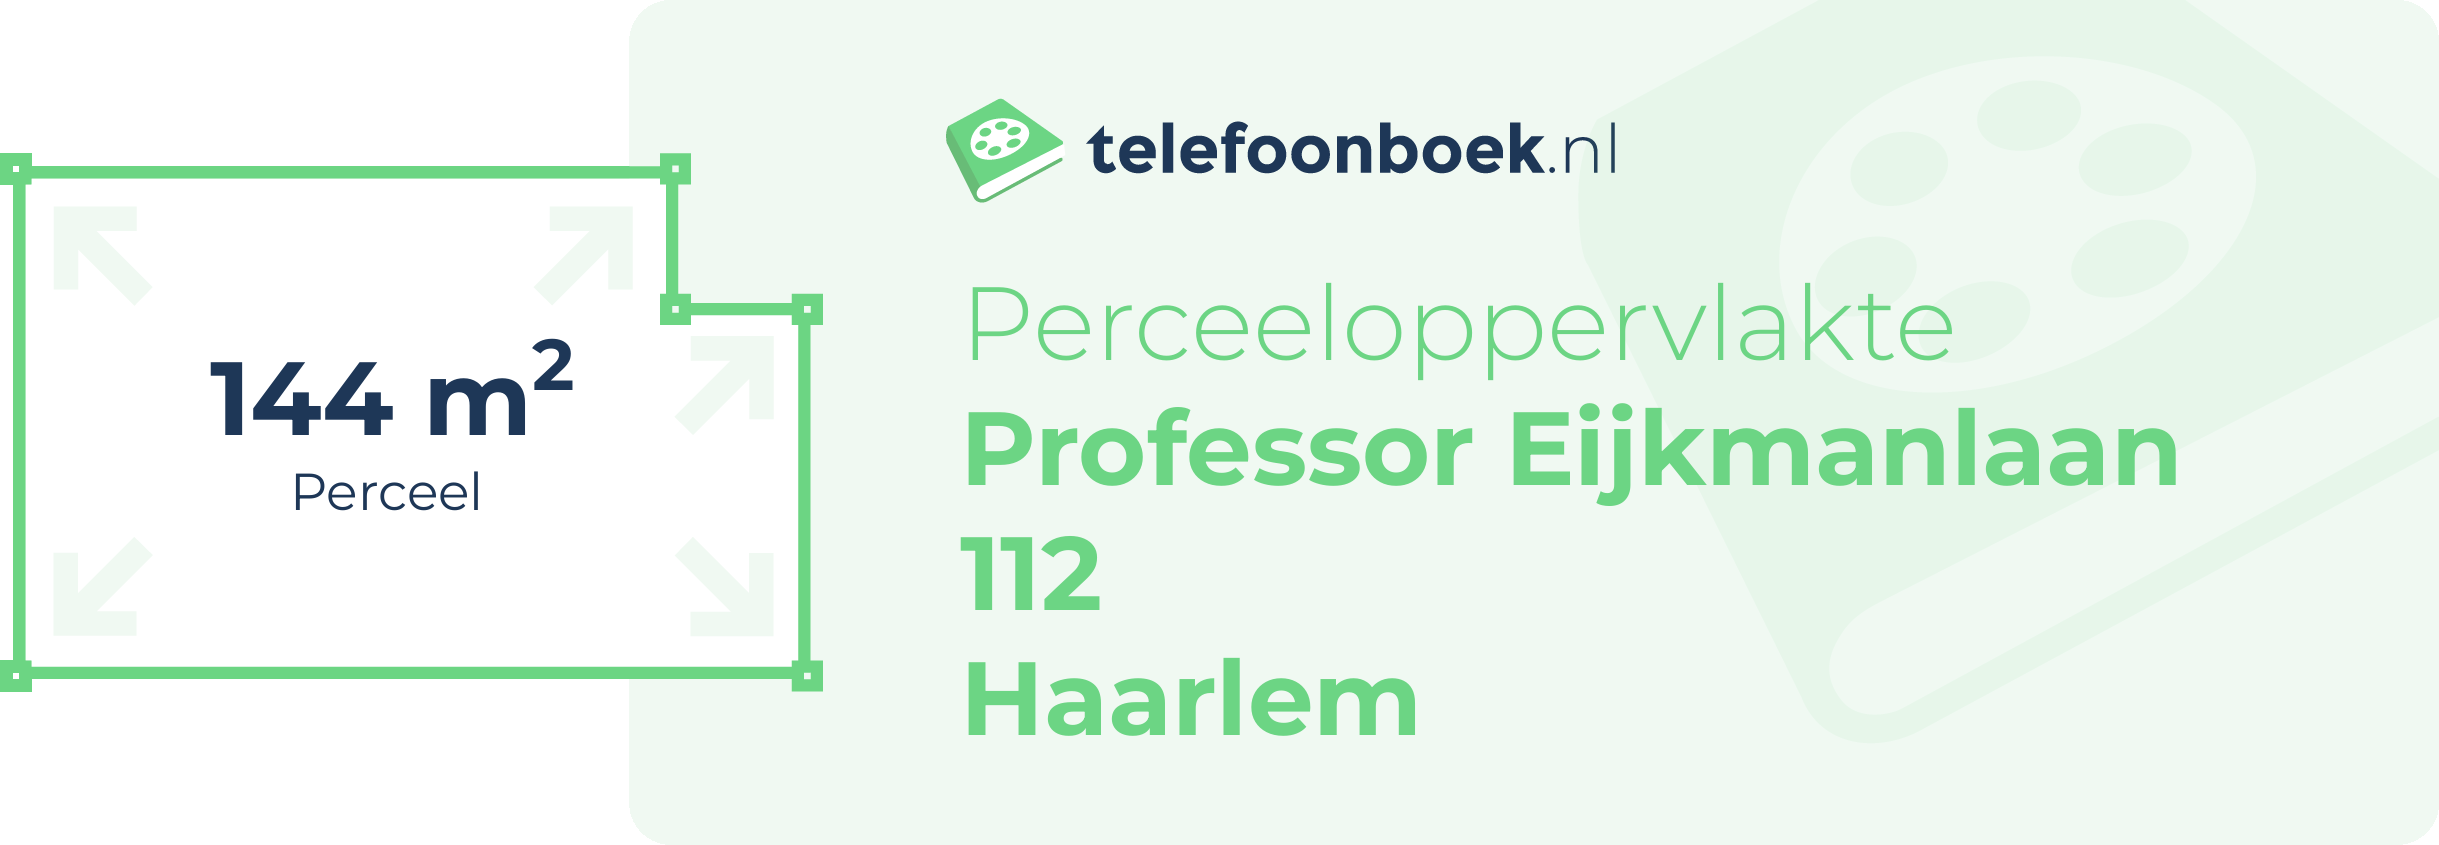 Perceeloppervlakte Professor Eijkmanlaan 112 Haarlem